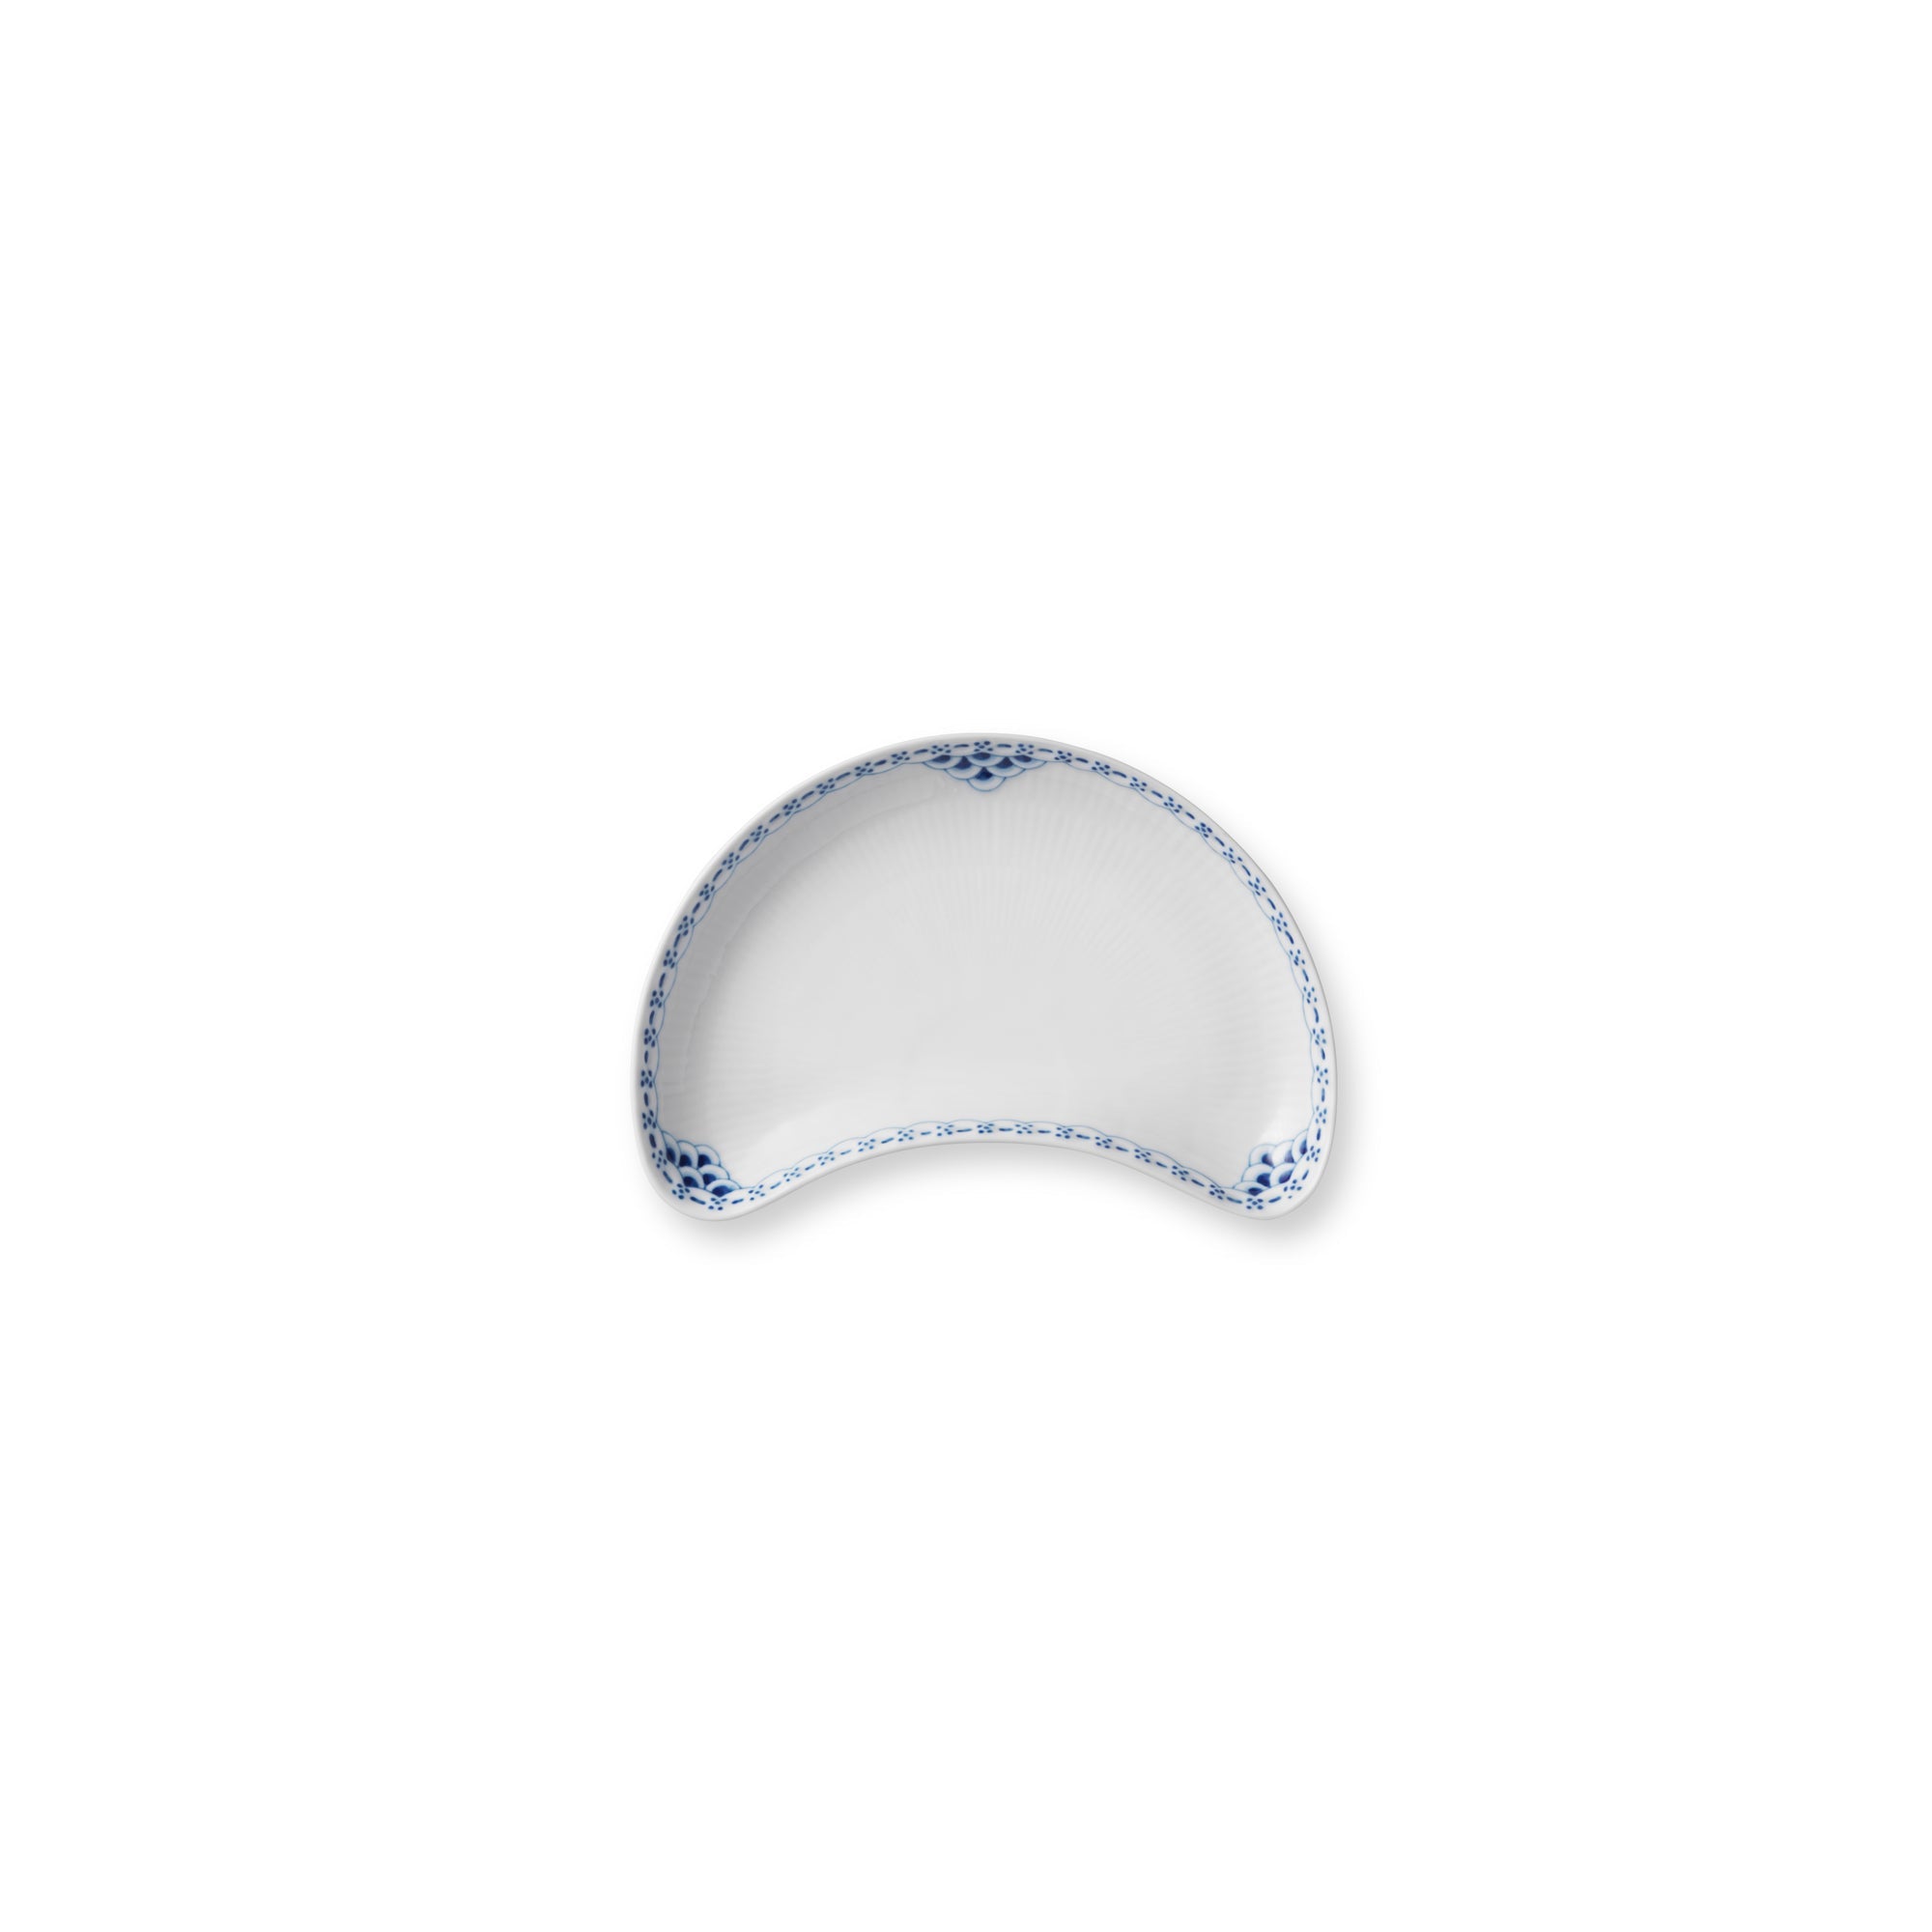 Royal Copenhagen Princess Bowl Crescent con forma de lubricación, 21.5 cm